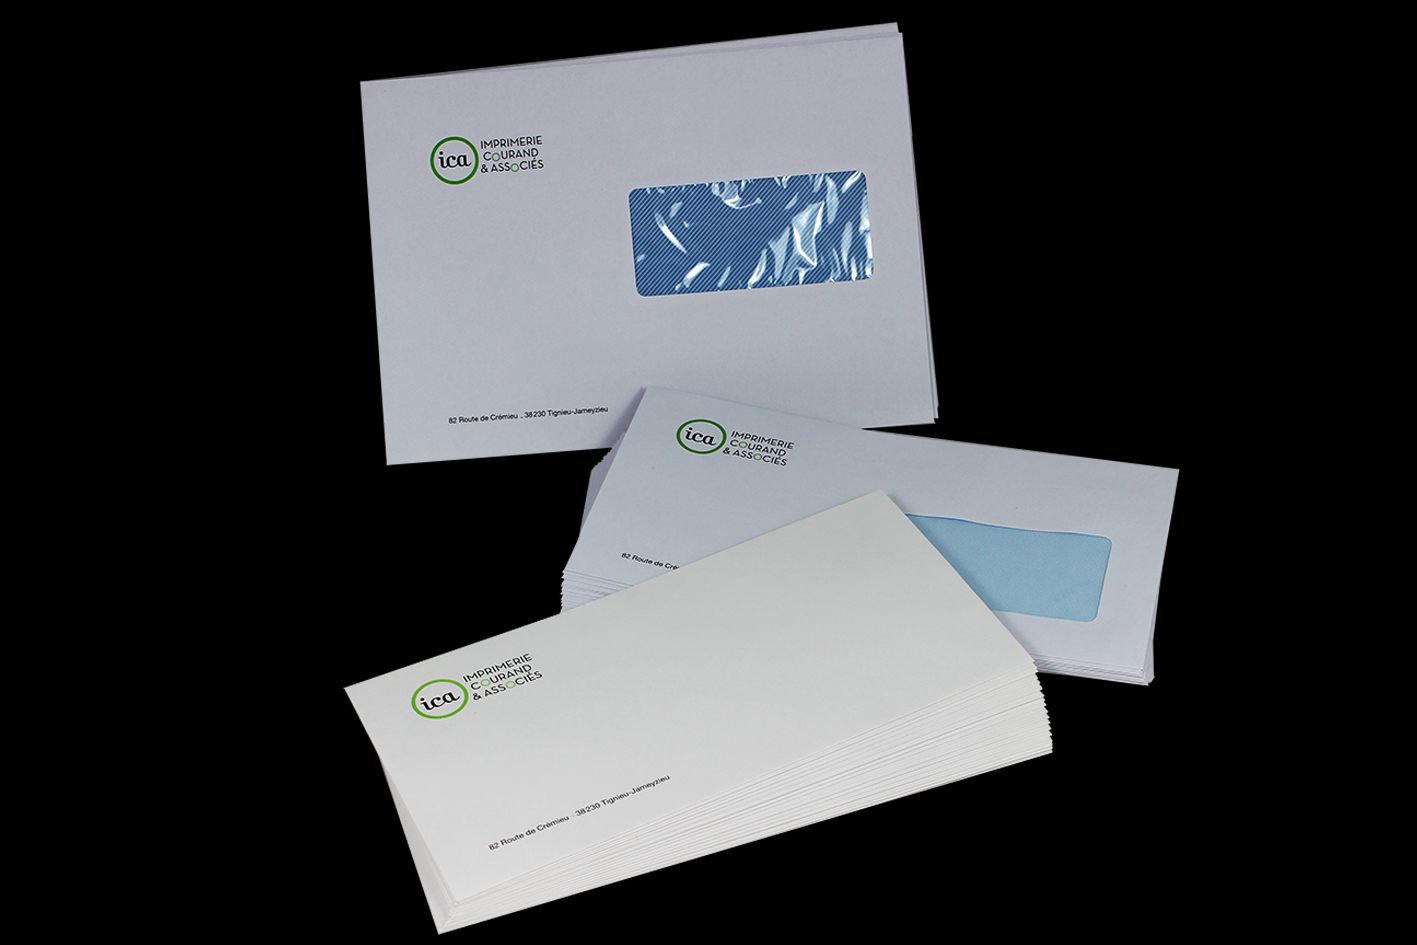 Enveloppes - Enveloppe personnalisée - Imprimerie Courand et Associés